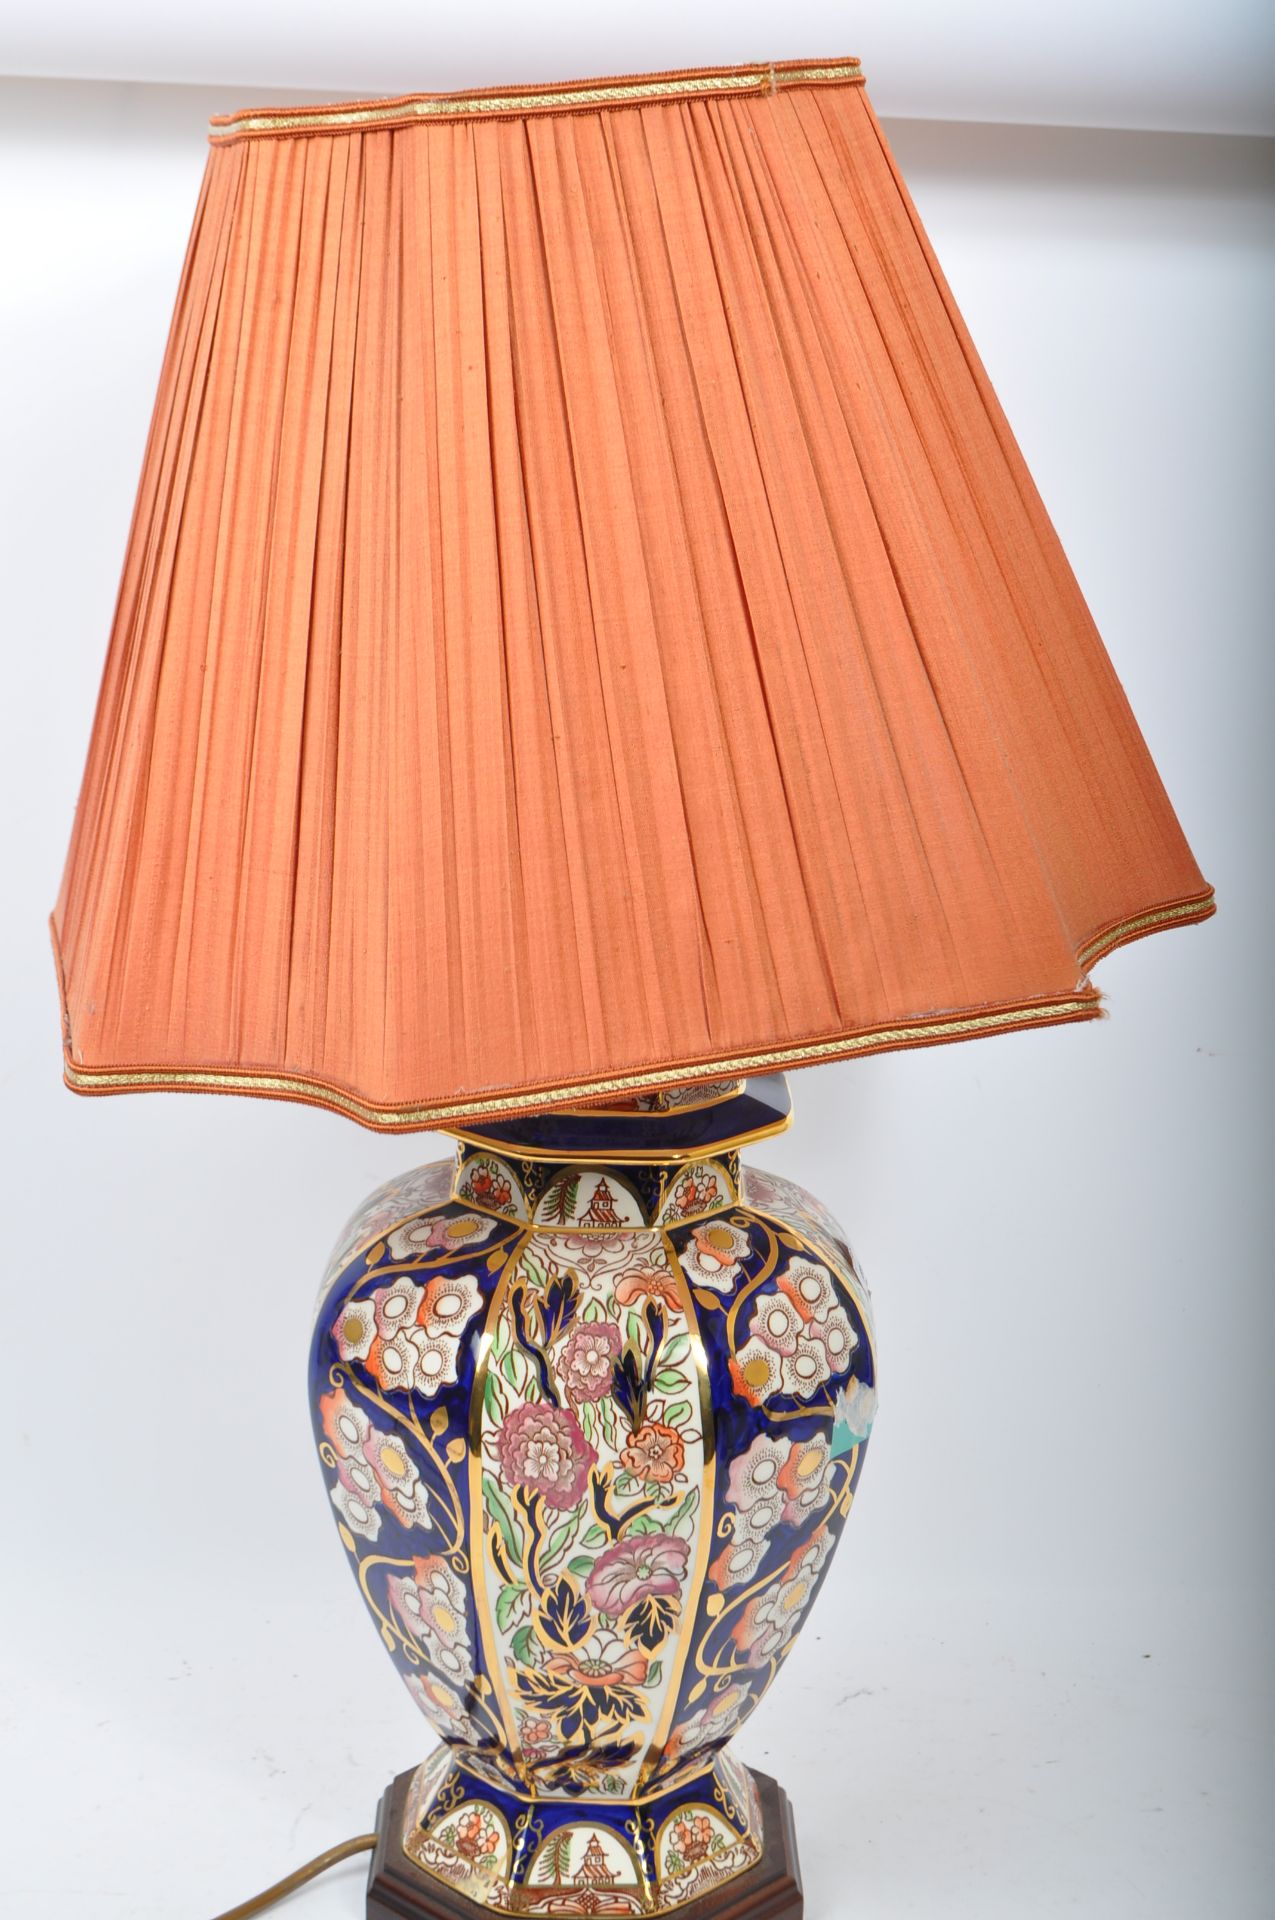 LARGE 20TH CENTURY GINGER JAR LAMP - Image 3 of 4